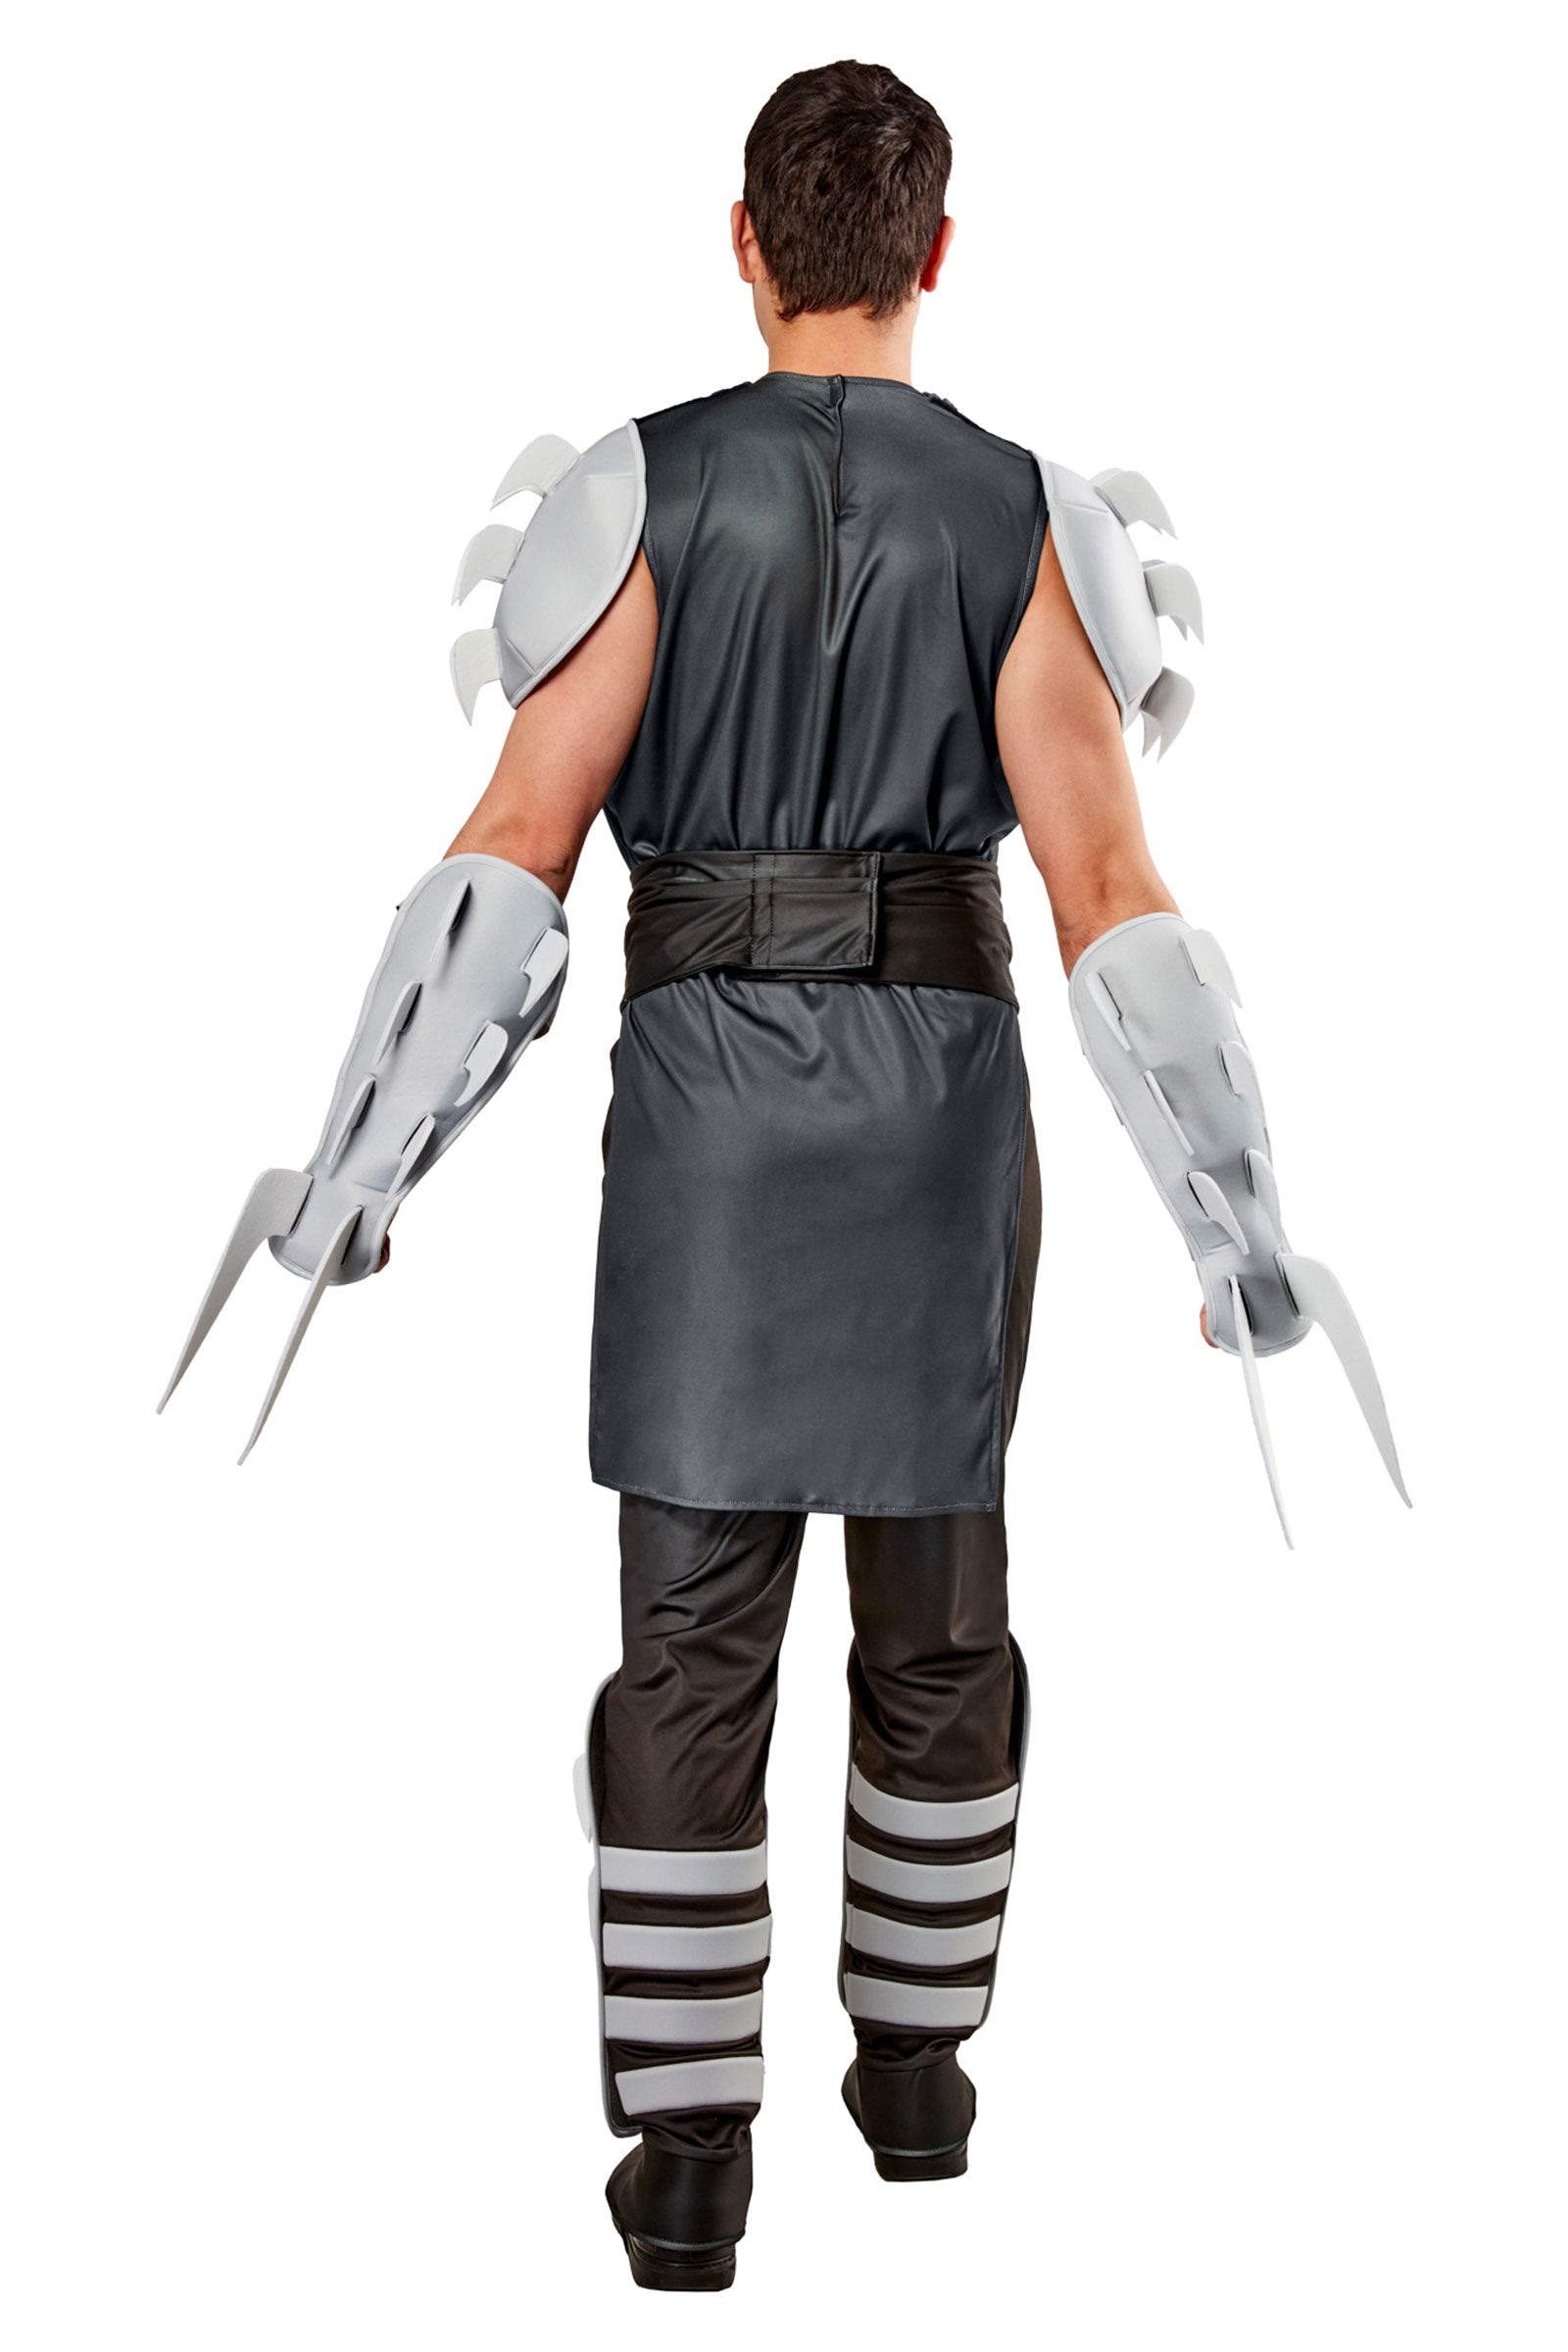 Shredder Deluxe Adult Costume